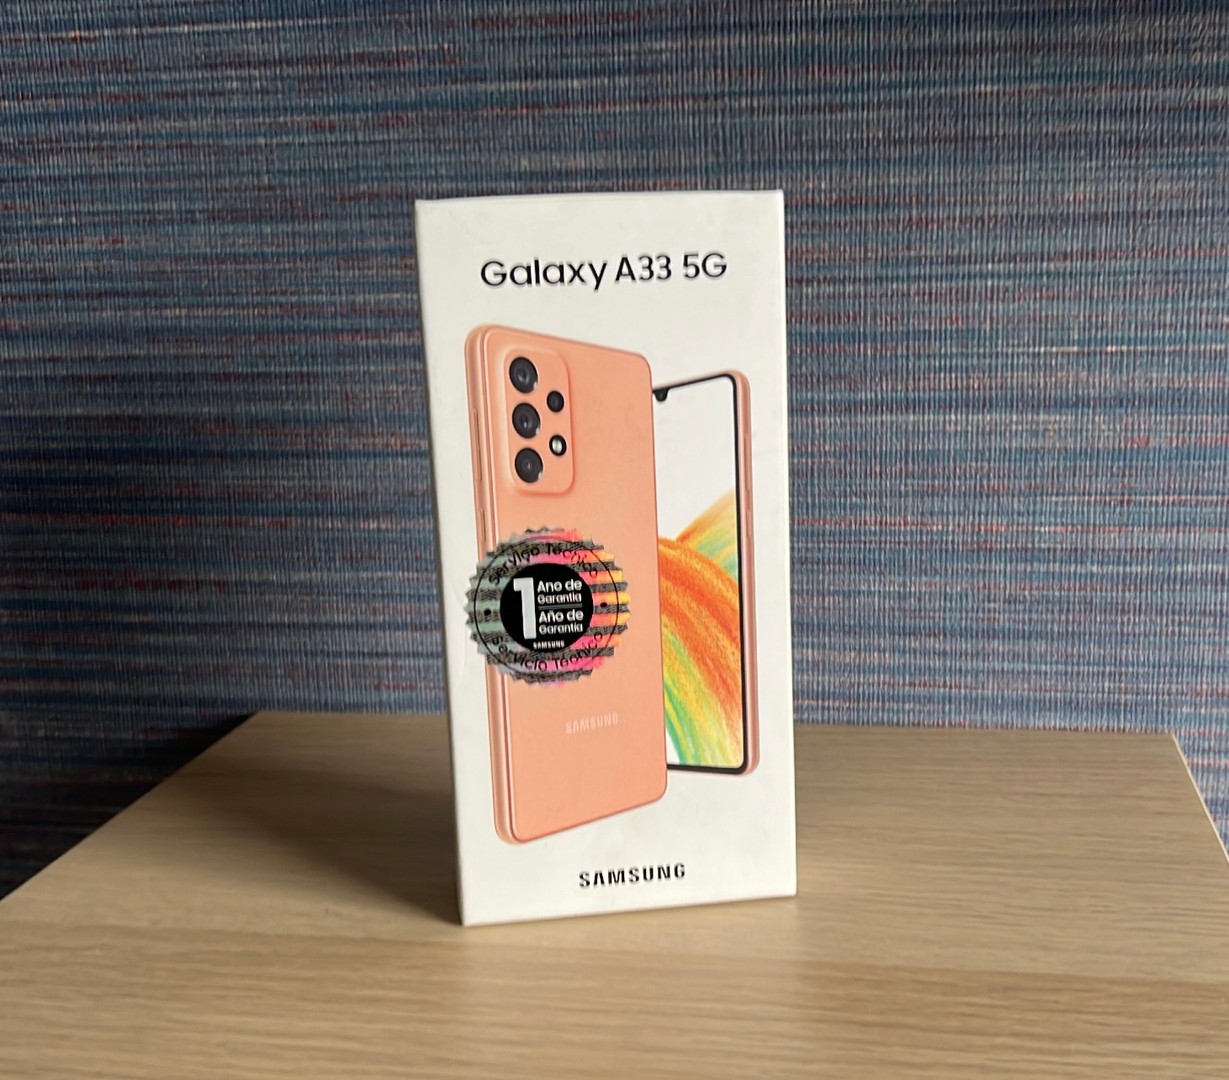 consolas y videojuegos - Vendo Samsung Galaxy A33 5G 128GB Peach Nuevo, Desbloqueado, RD$ 16,800 NEG